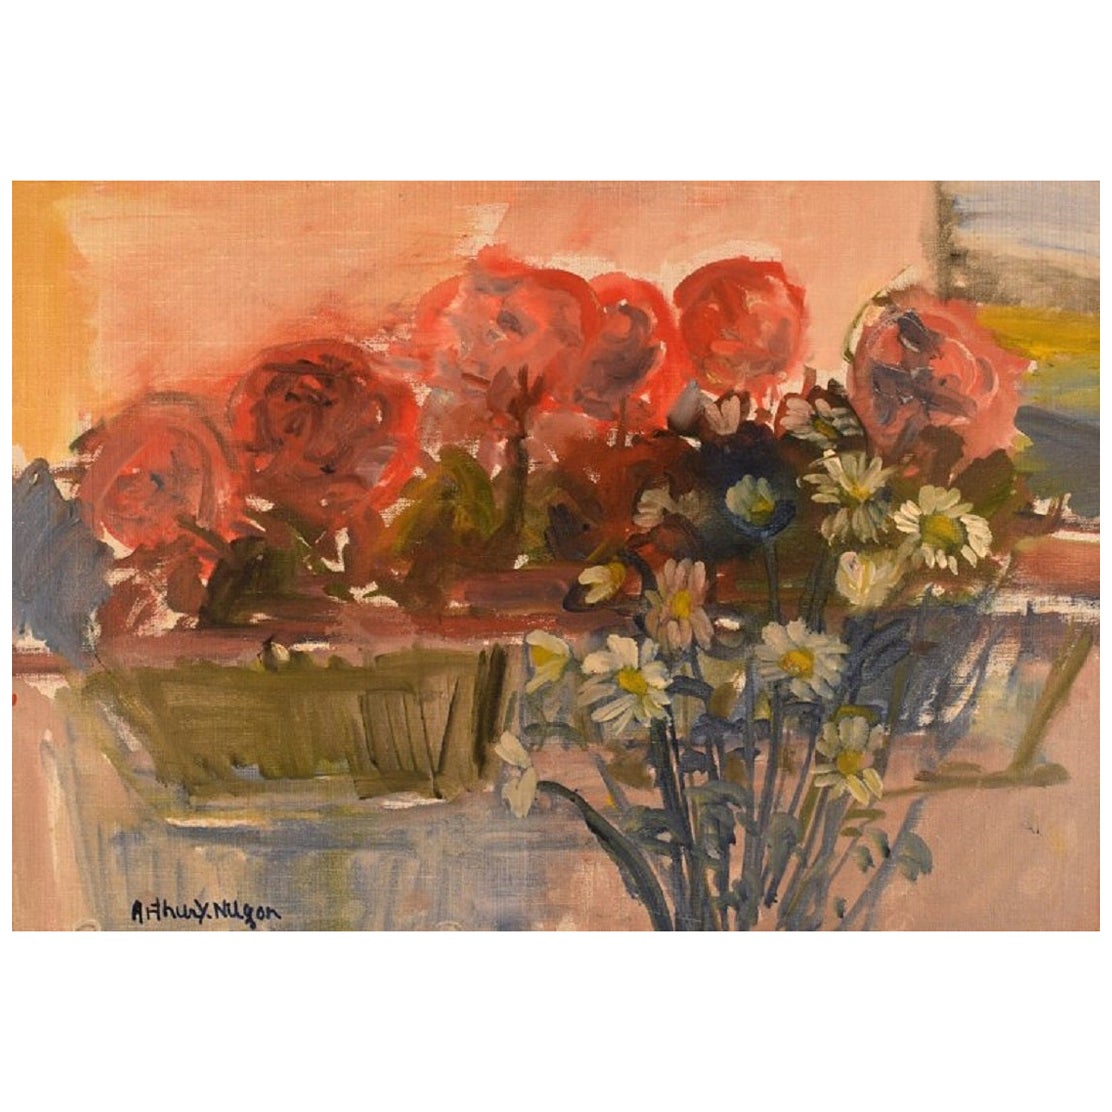 Arthur Y. Nilsson, aufgeführter schwedischer Künstler. Öl/Leinwand. Arrangement mit Blumen